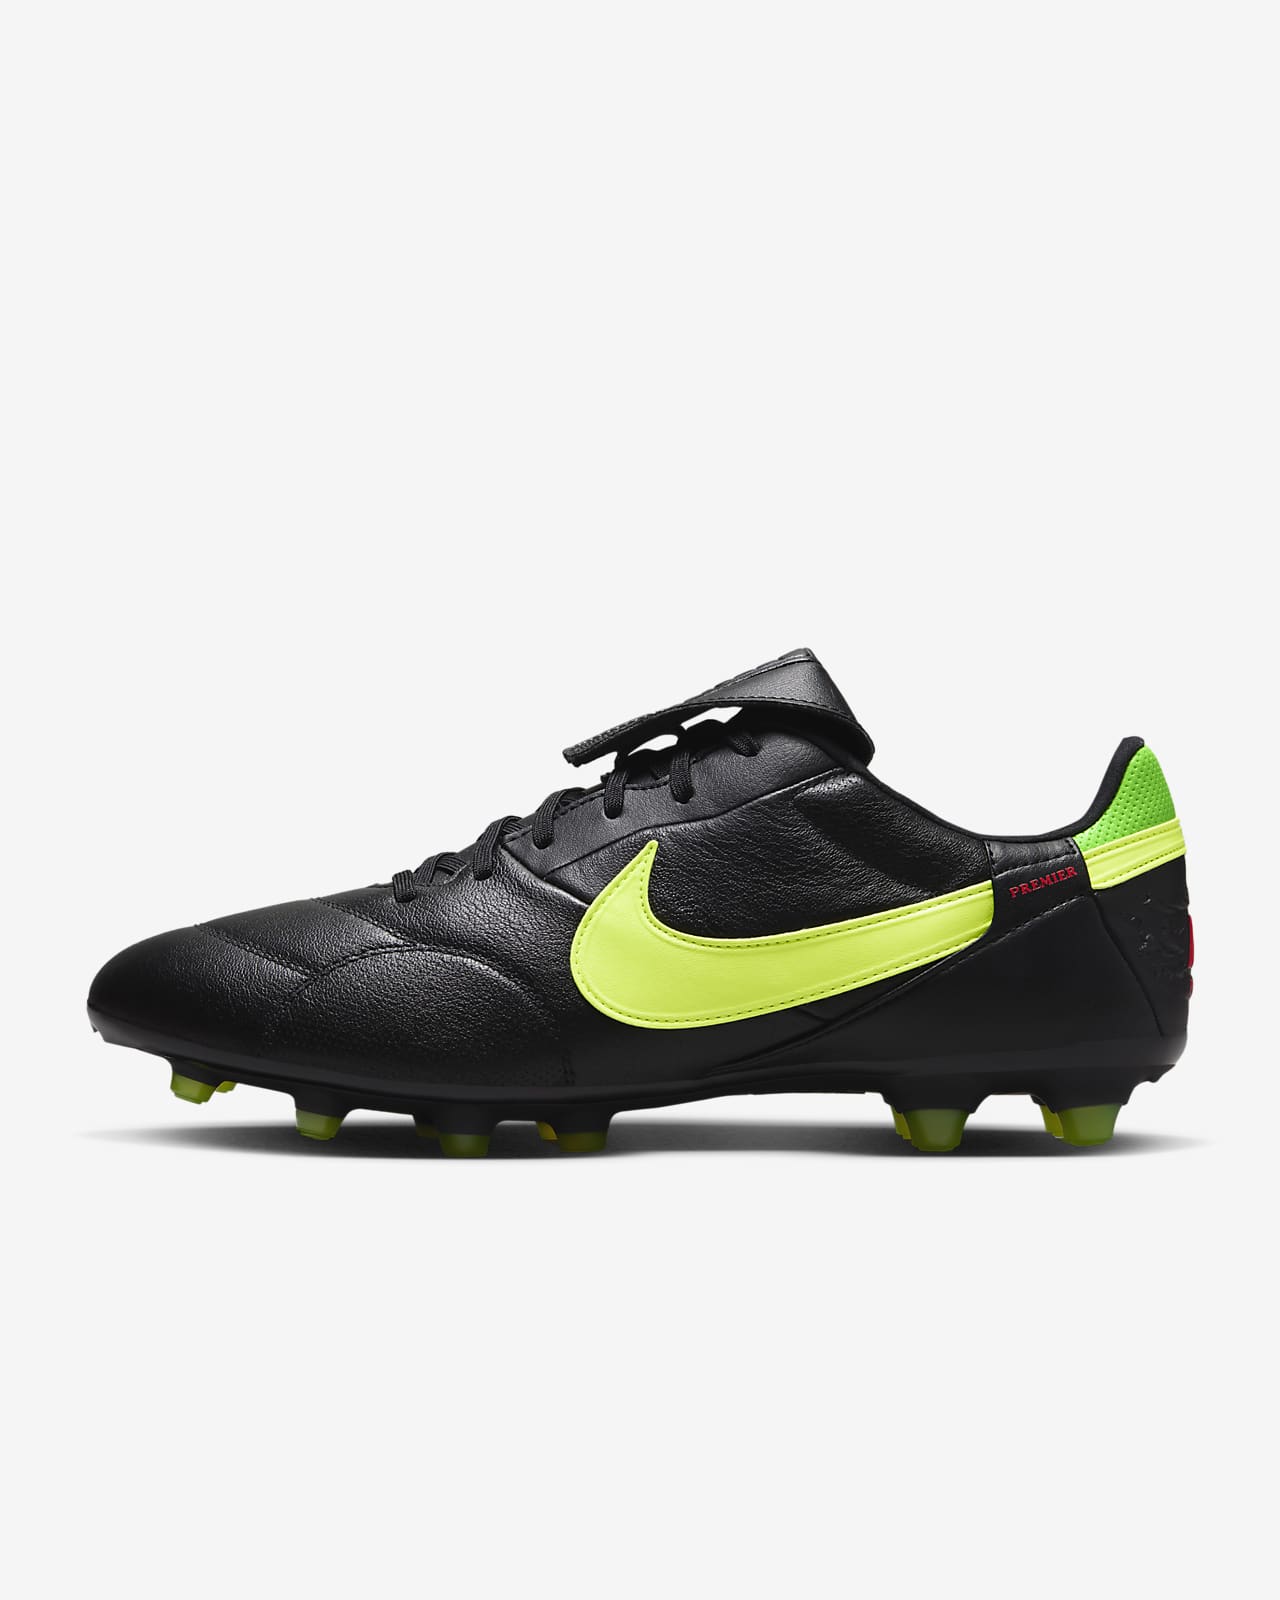 Fotbollssko för gräs Nike Premier 3 med lågt skaft